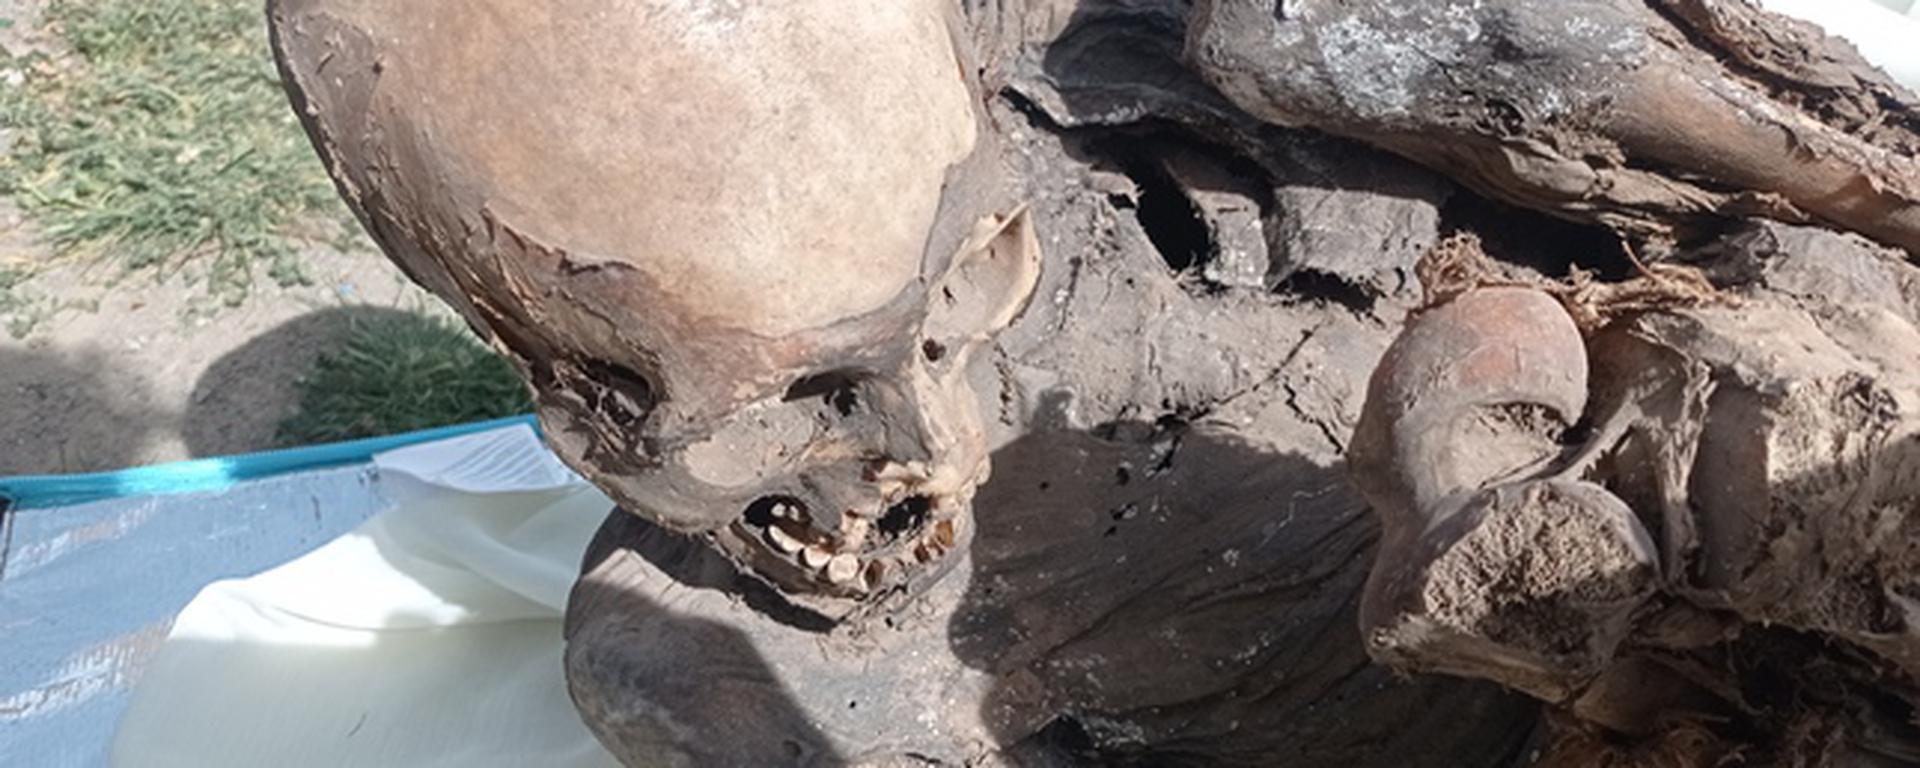 Puno: ¿Cómo terminó una momia prehispánica en la mochila de repartidor? Todo lo que debes saber 